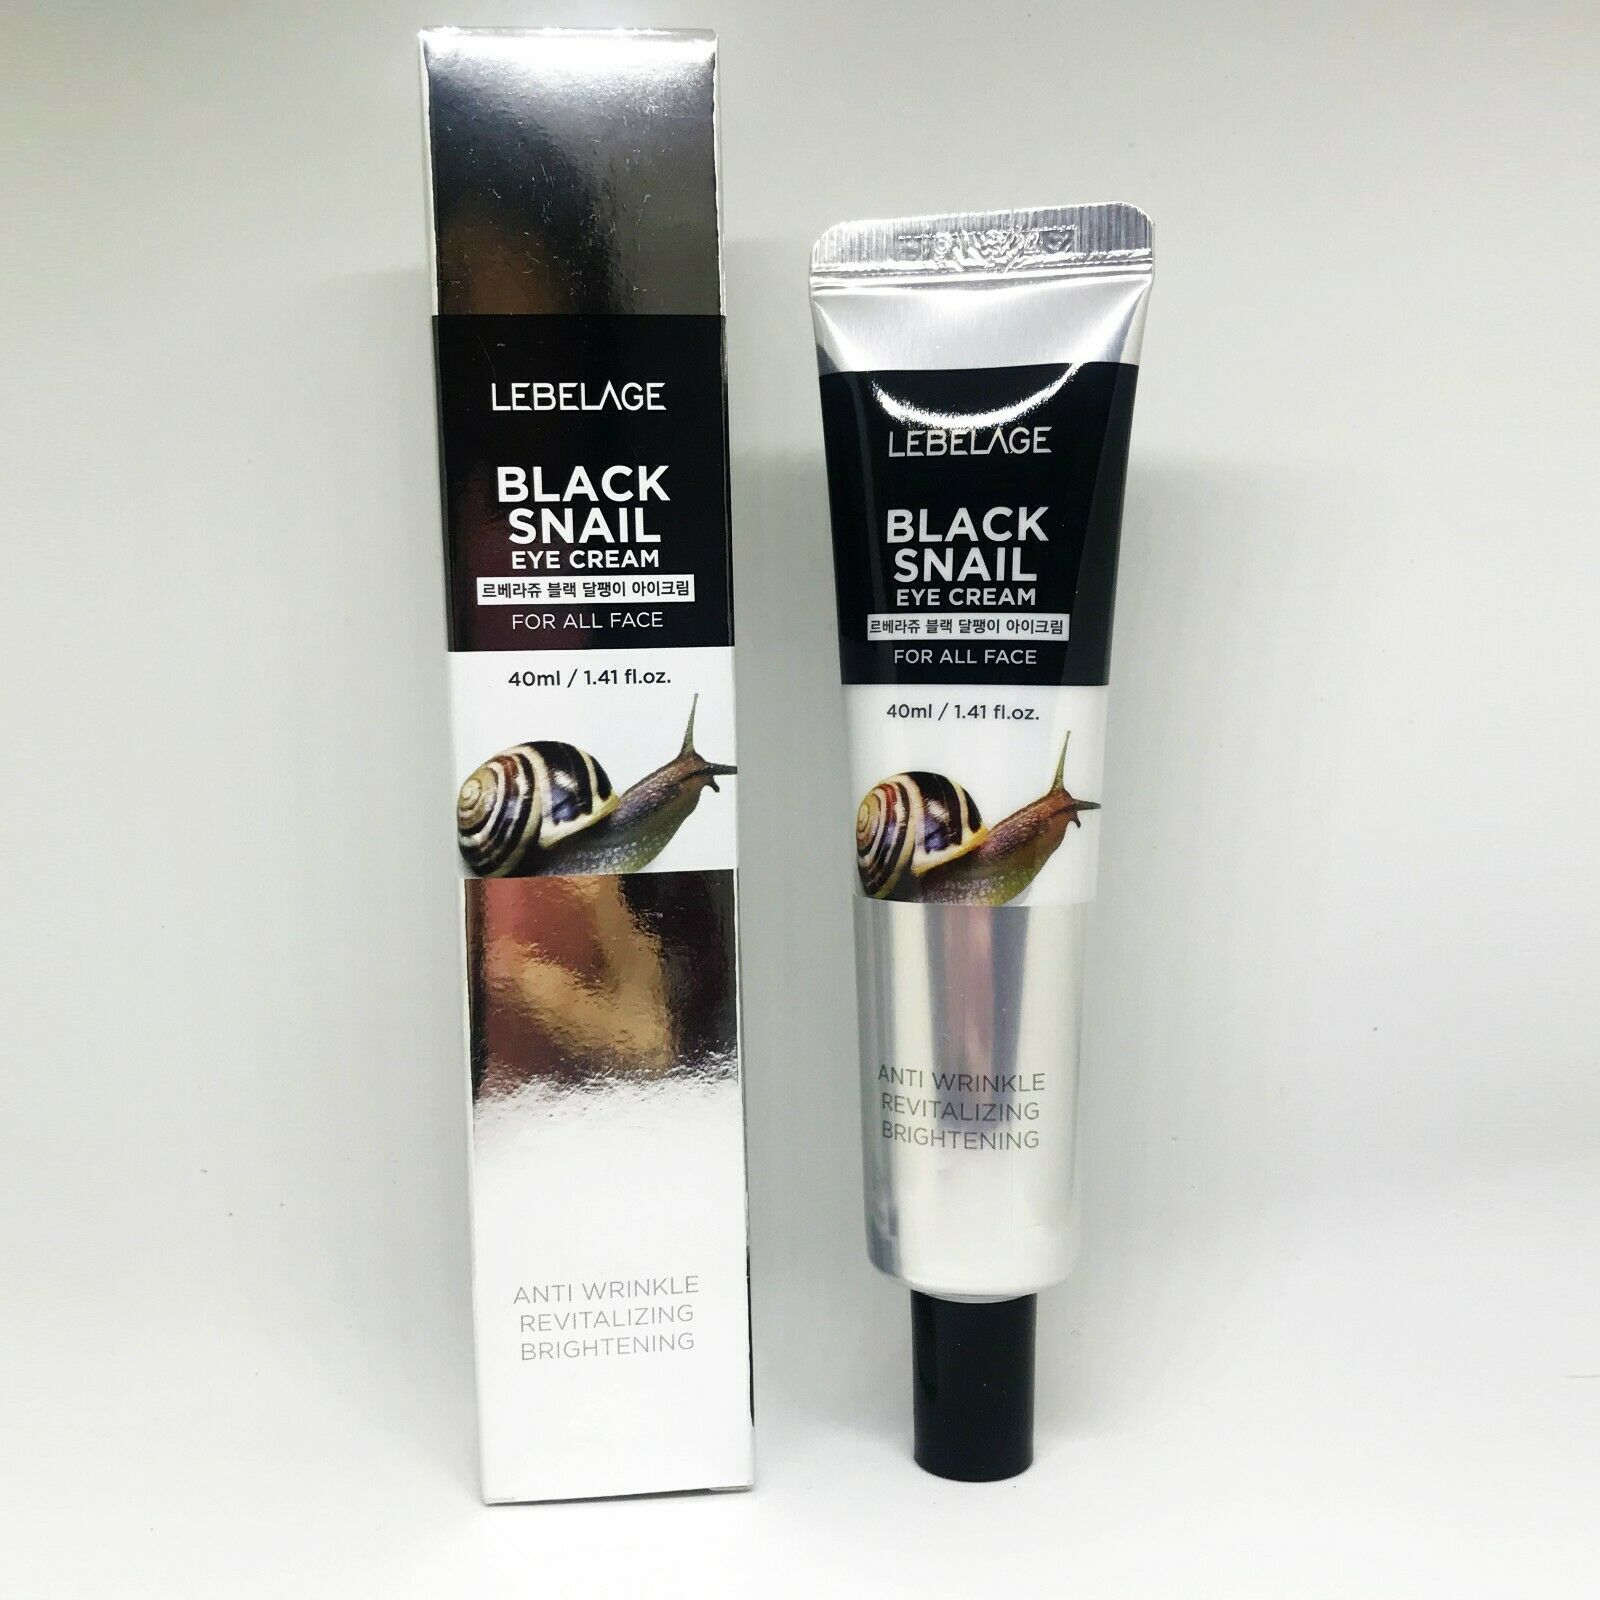 LEBELAGE Black Snail Eye Cream 40ml 1.41 fl.oz nourishing moisture